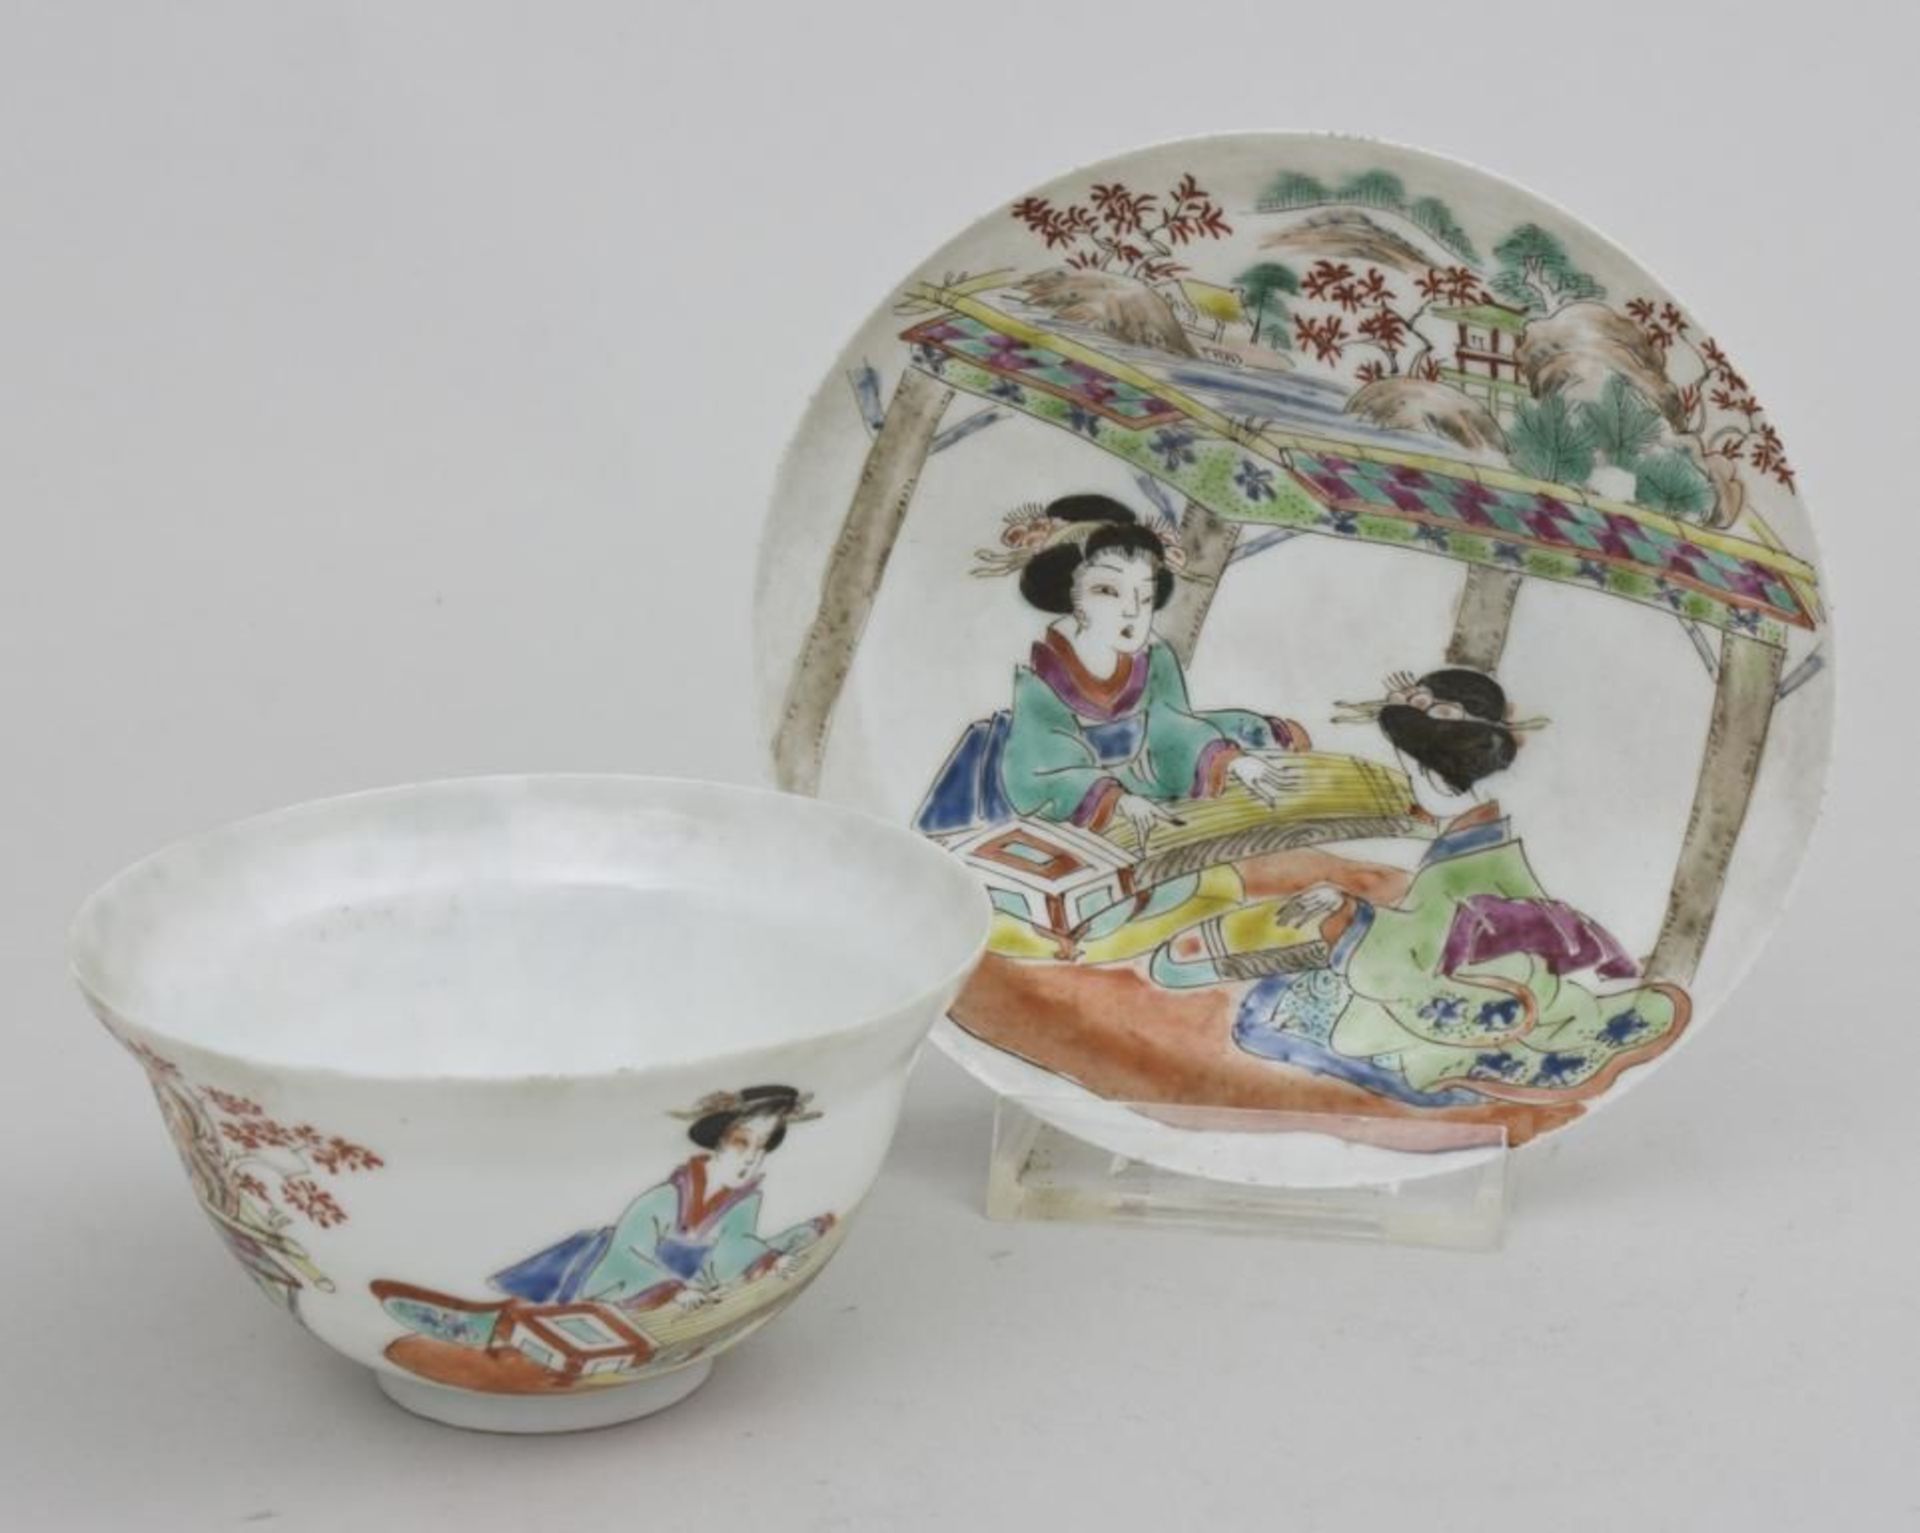 Teeschale mit Unterschale, Japan, Anfang 20. Jh.  Teeschale mit ausladendem Rand, Unterschale leicht